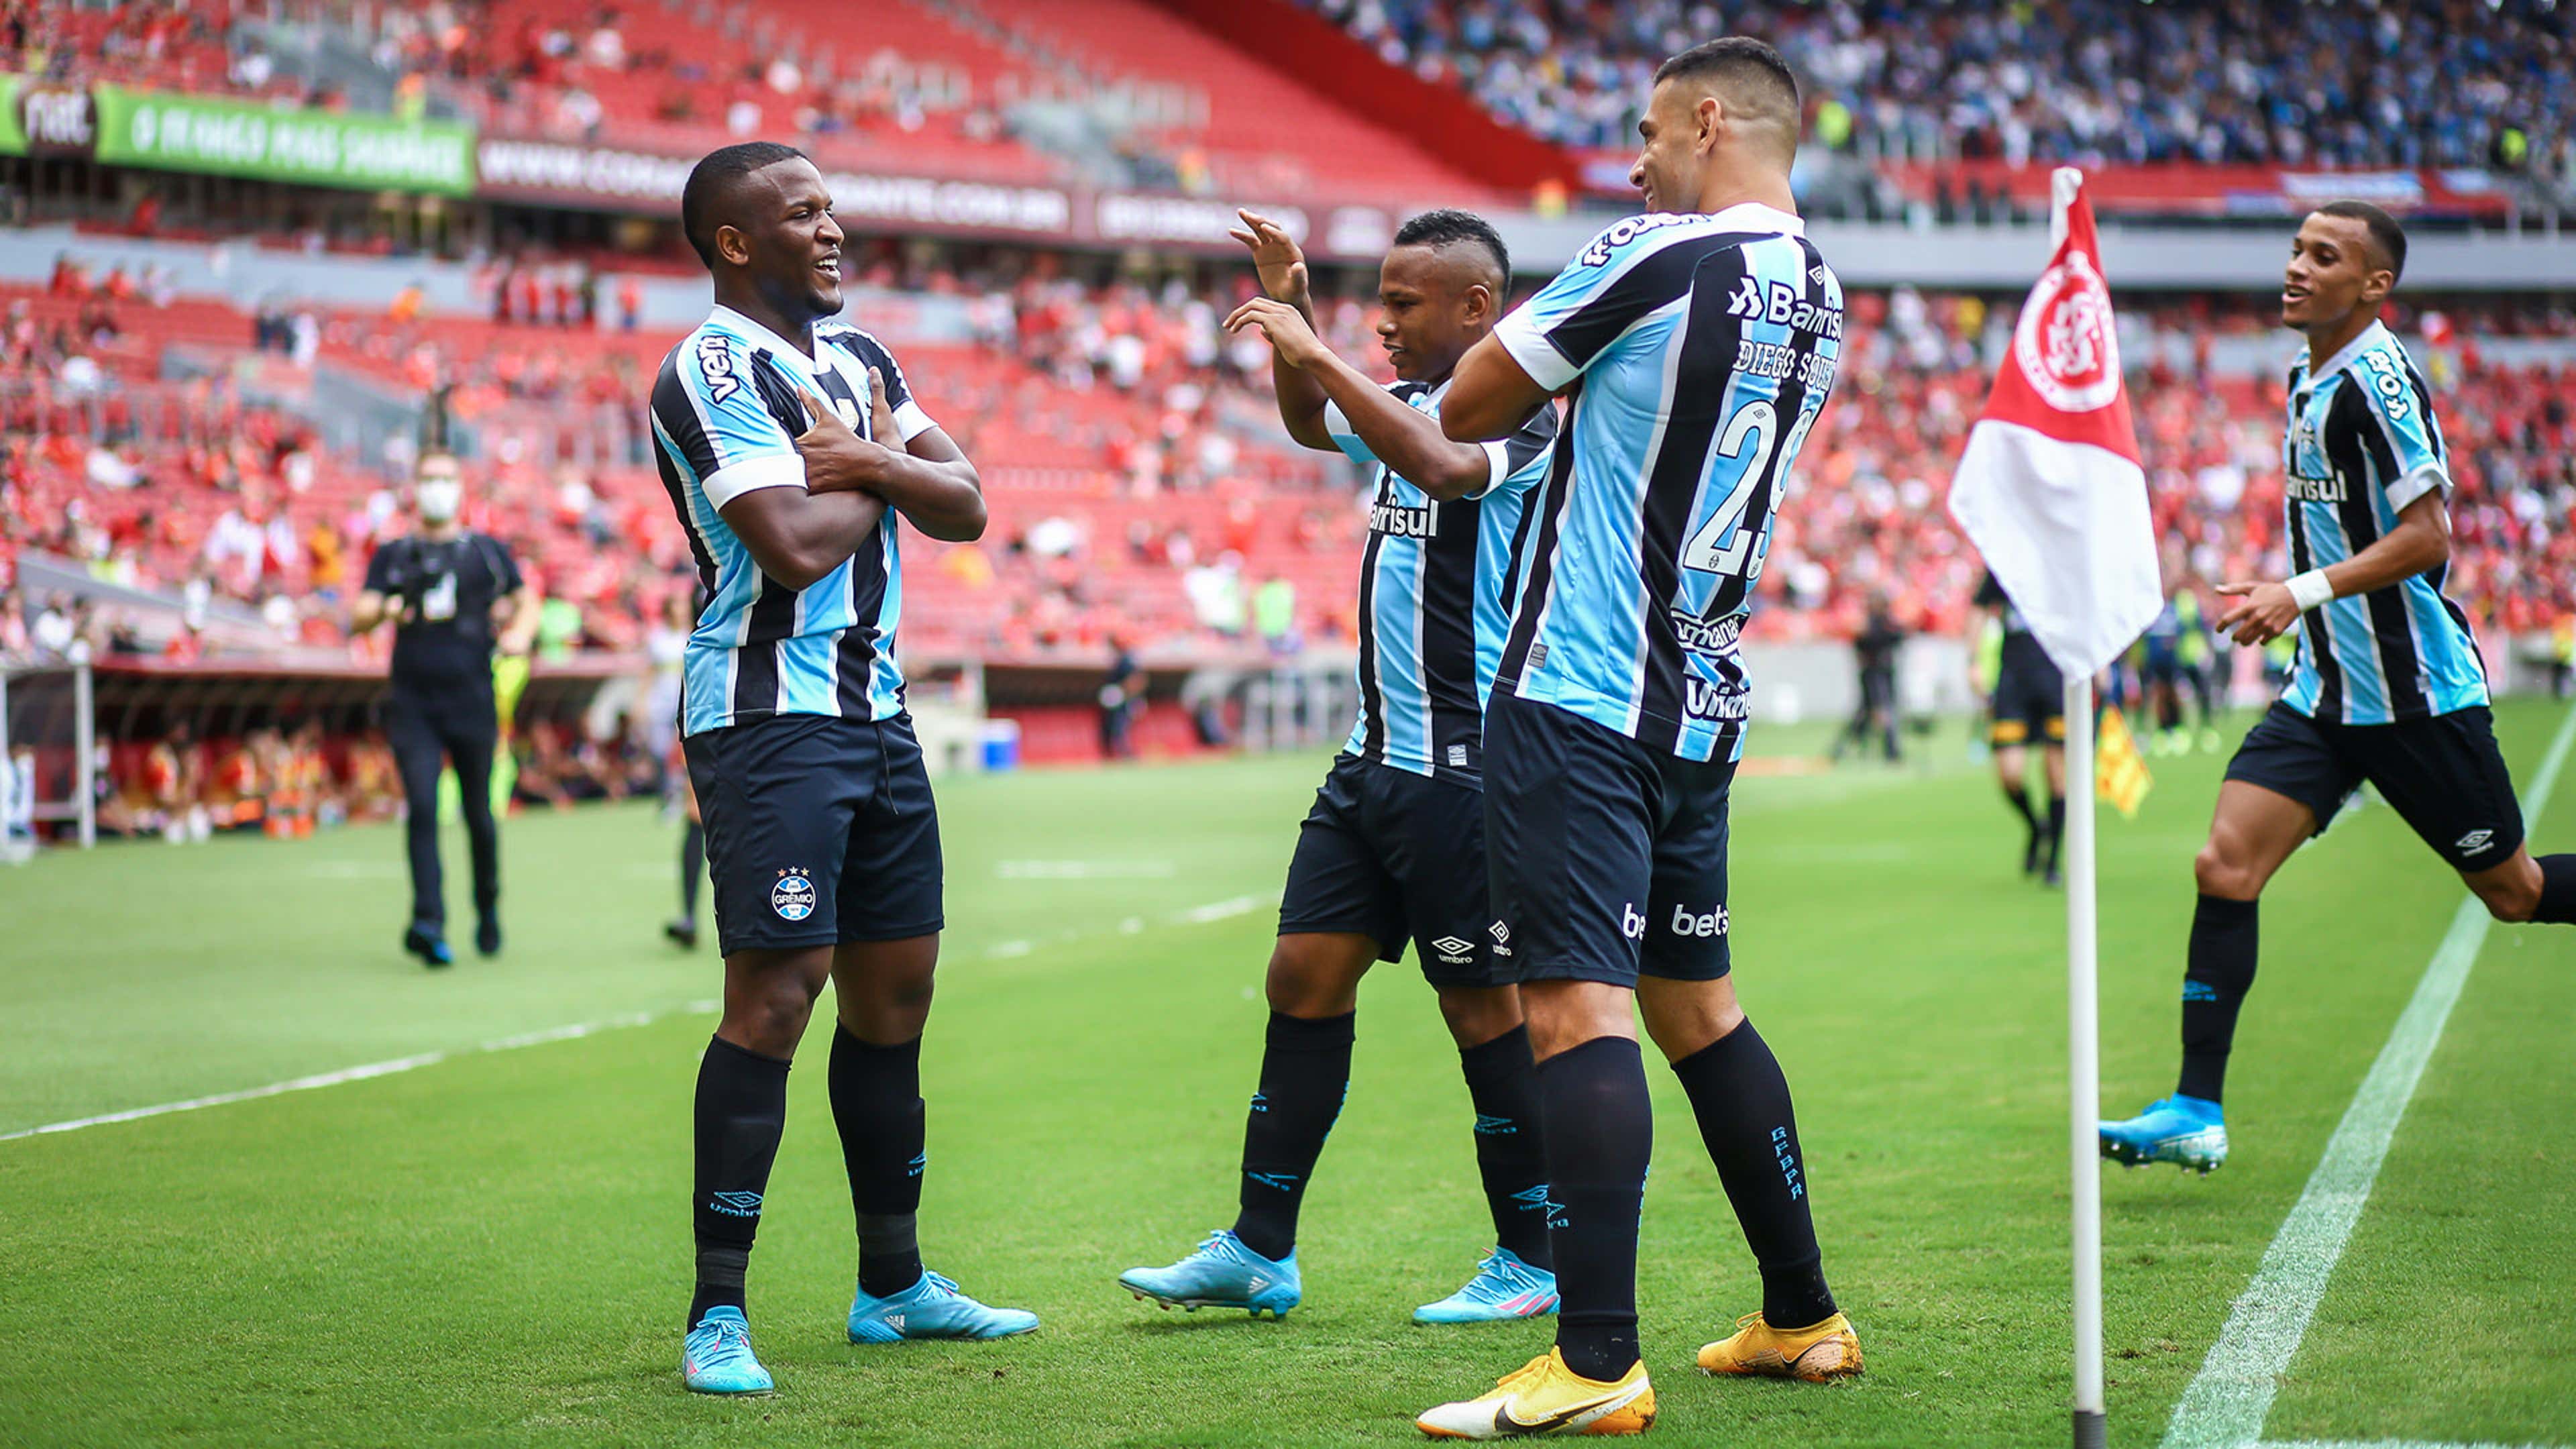 Próximos jogos do Grêmio: datas, horários e onde assistir - SouGremio